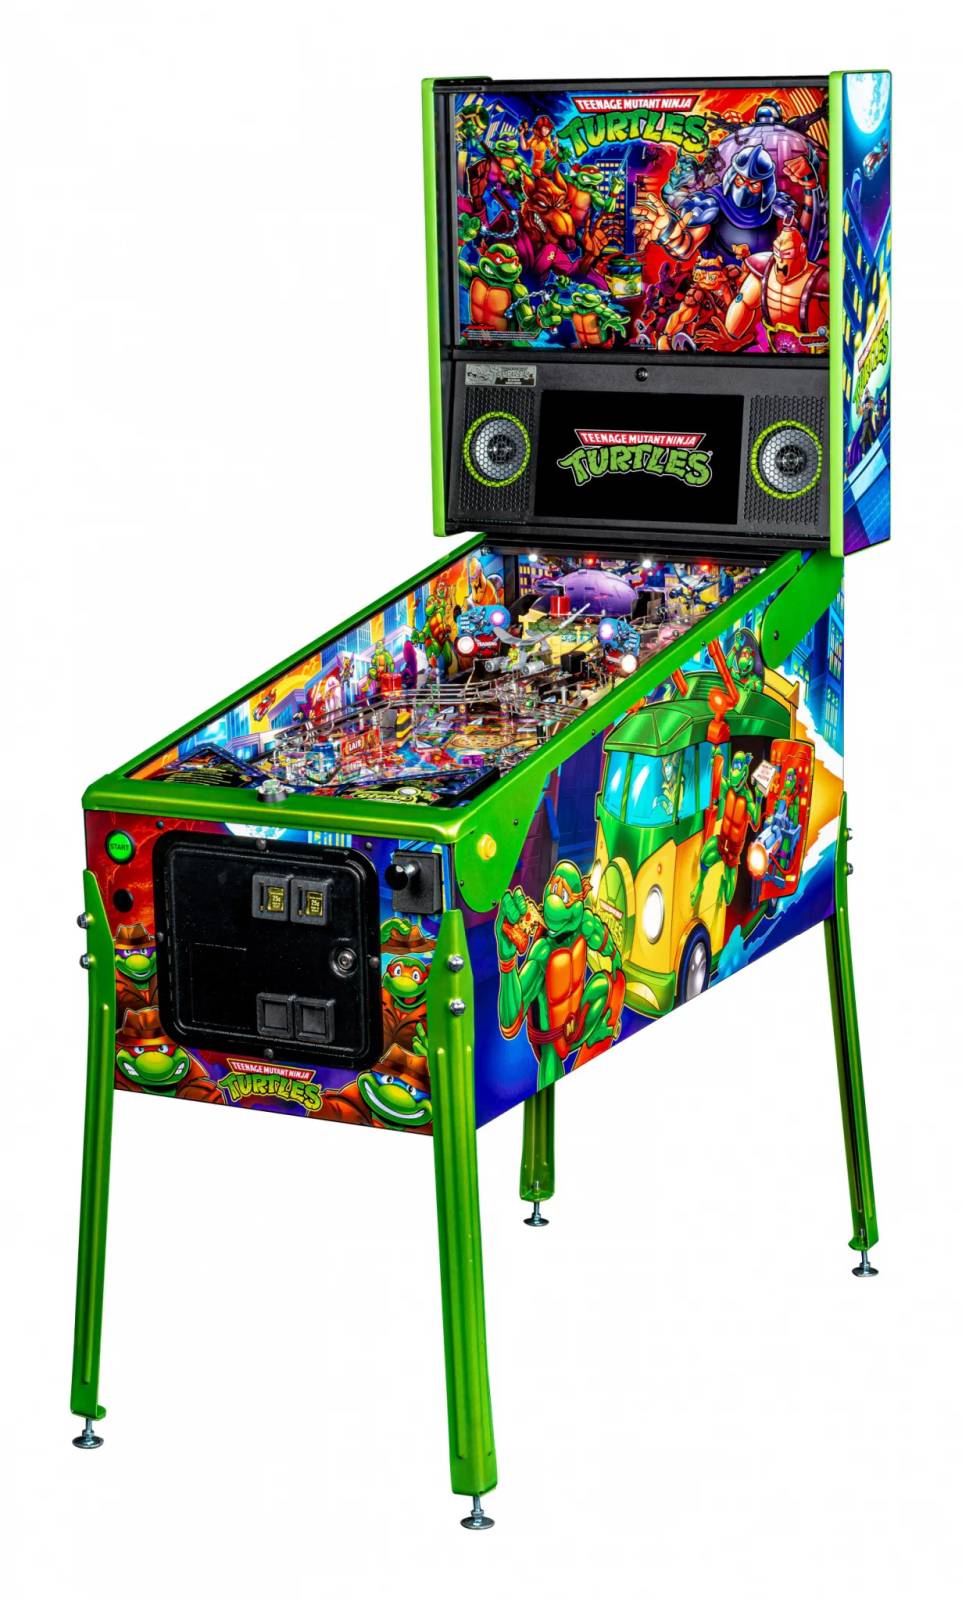 Buy Whirlwind Pinball Machine Online - Premium Pinballs LLC